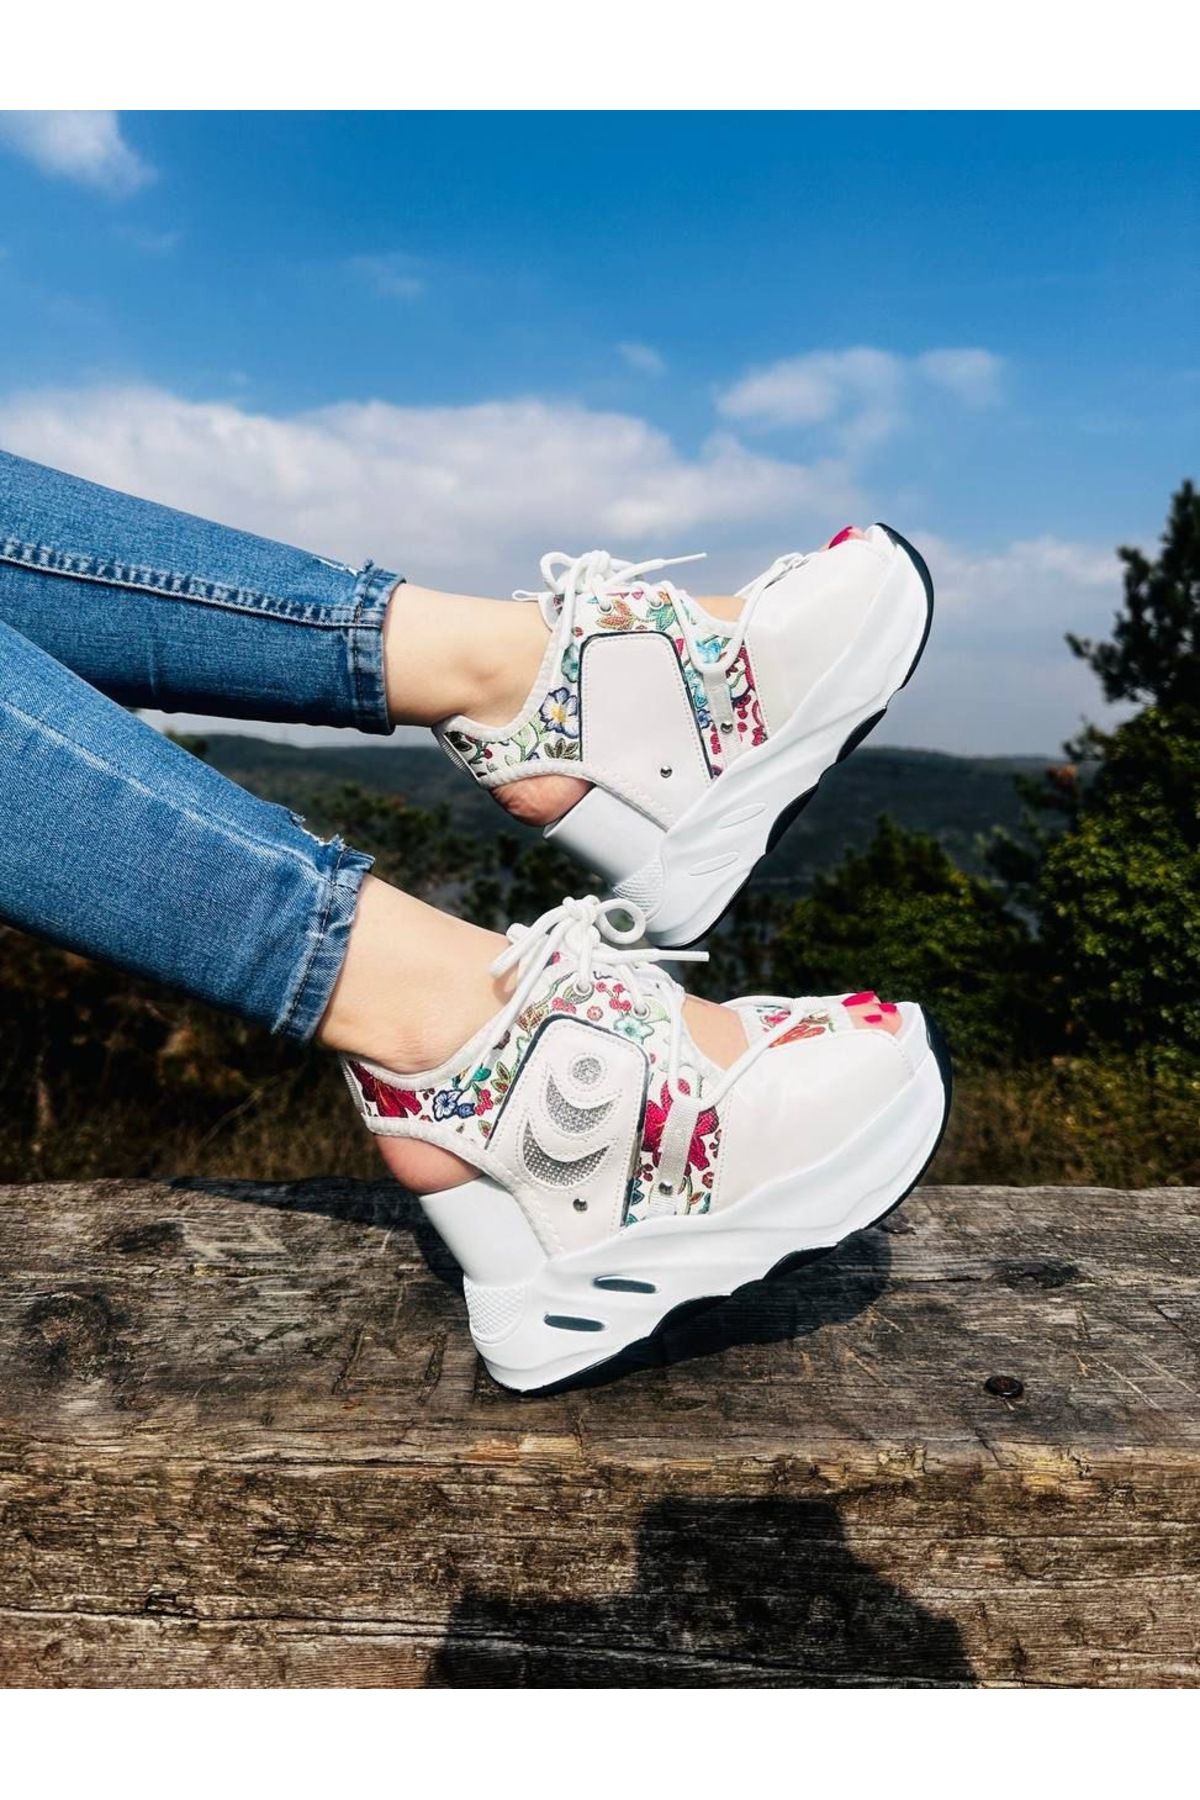 Essen Yüksek spor sandalet ayakkabılar çiçekli